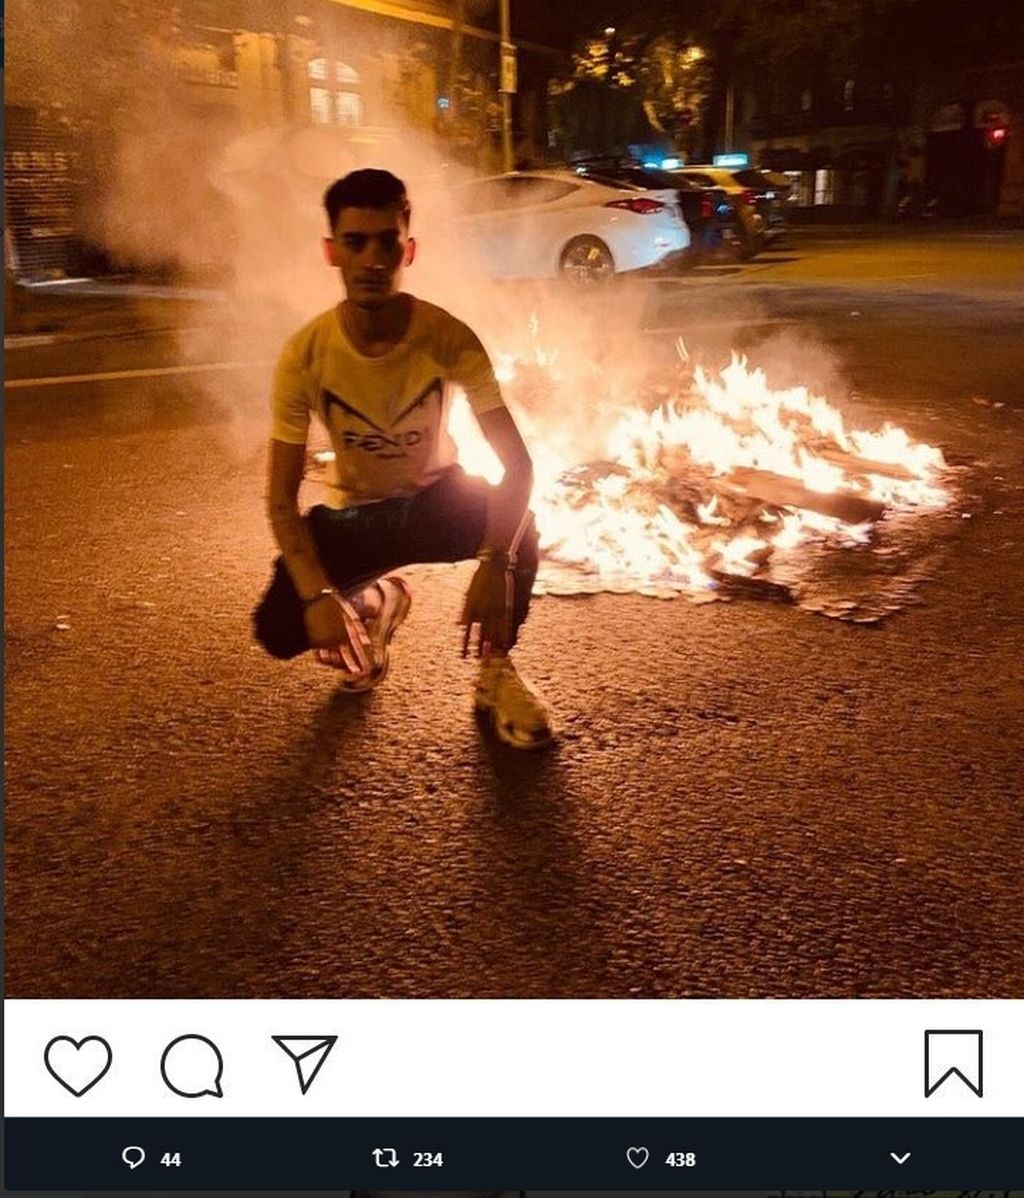 Postureo entre las llamas, las redes sociales se llenan de imágenes con las barricadas de Cataluña de fondo